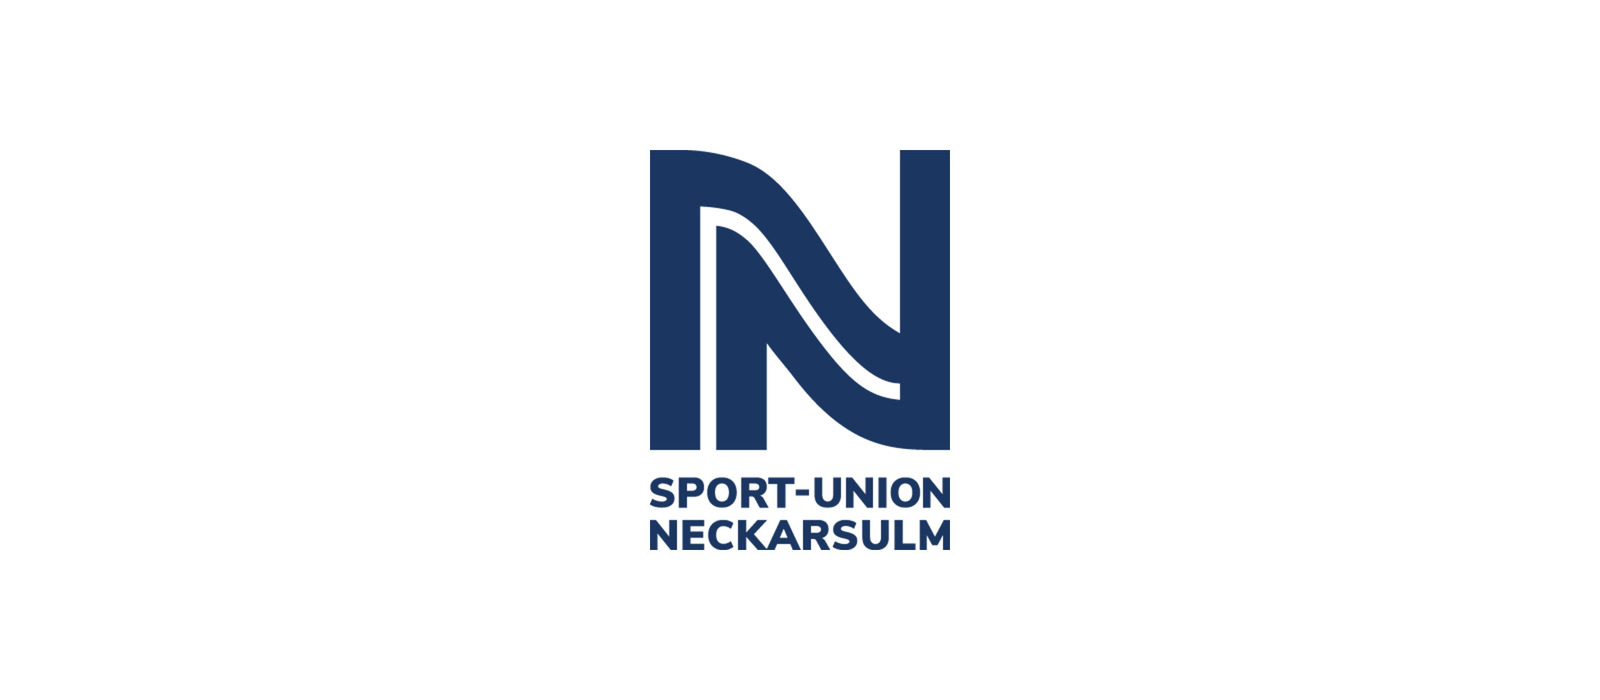 Sport-Union Neckarsulm vs HSG Blomberg-Lippe